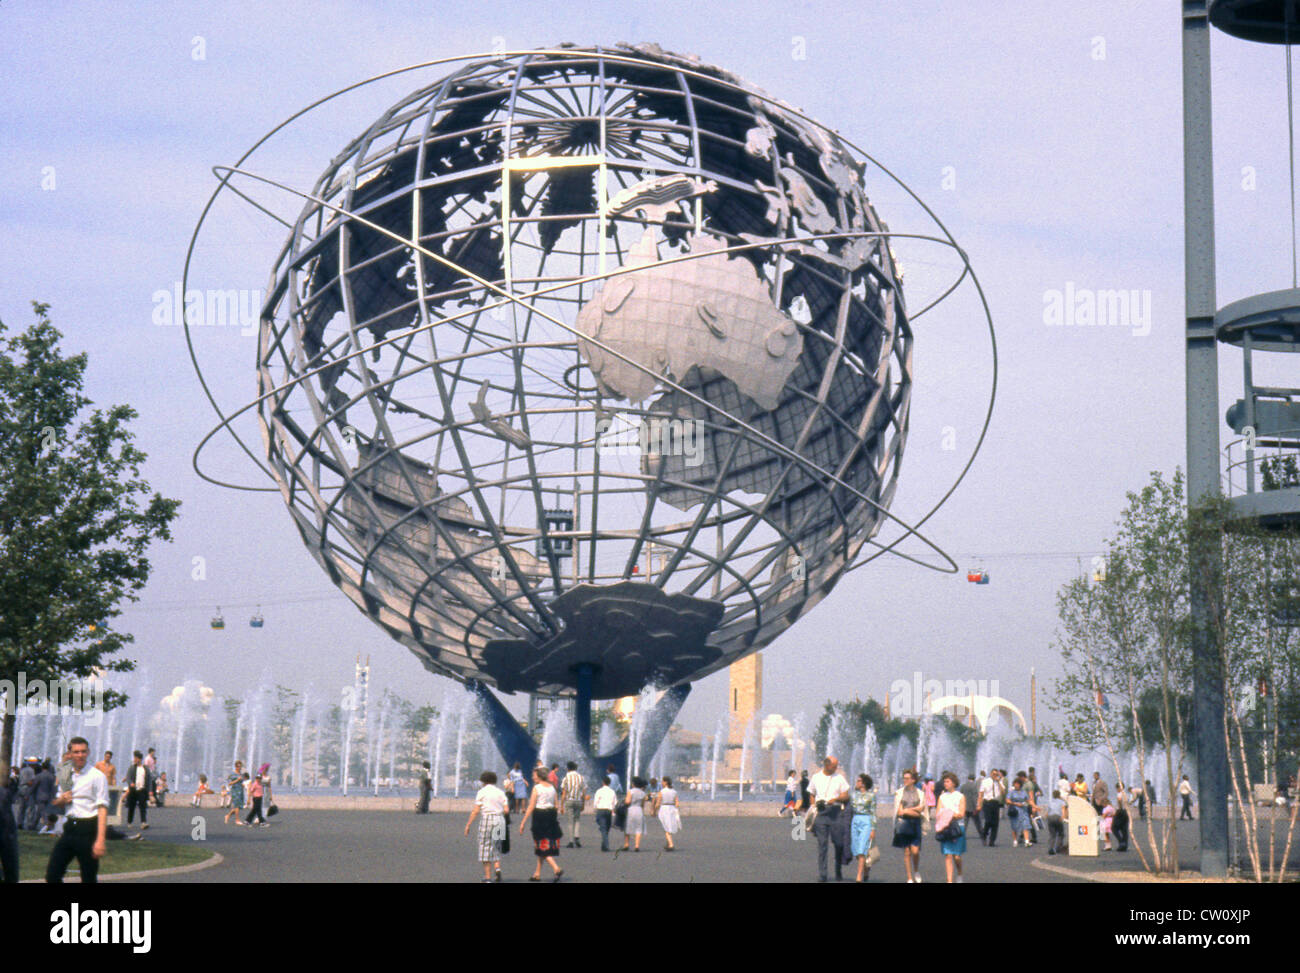 Original Foto in 1964 berücksichtigt. Die unisphere im Jahre 1964 in New York World's Fair mit Fußgängern. Quelle: 35 MM TRANSPARENZ Stockfoto